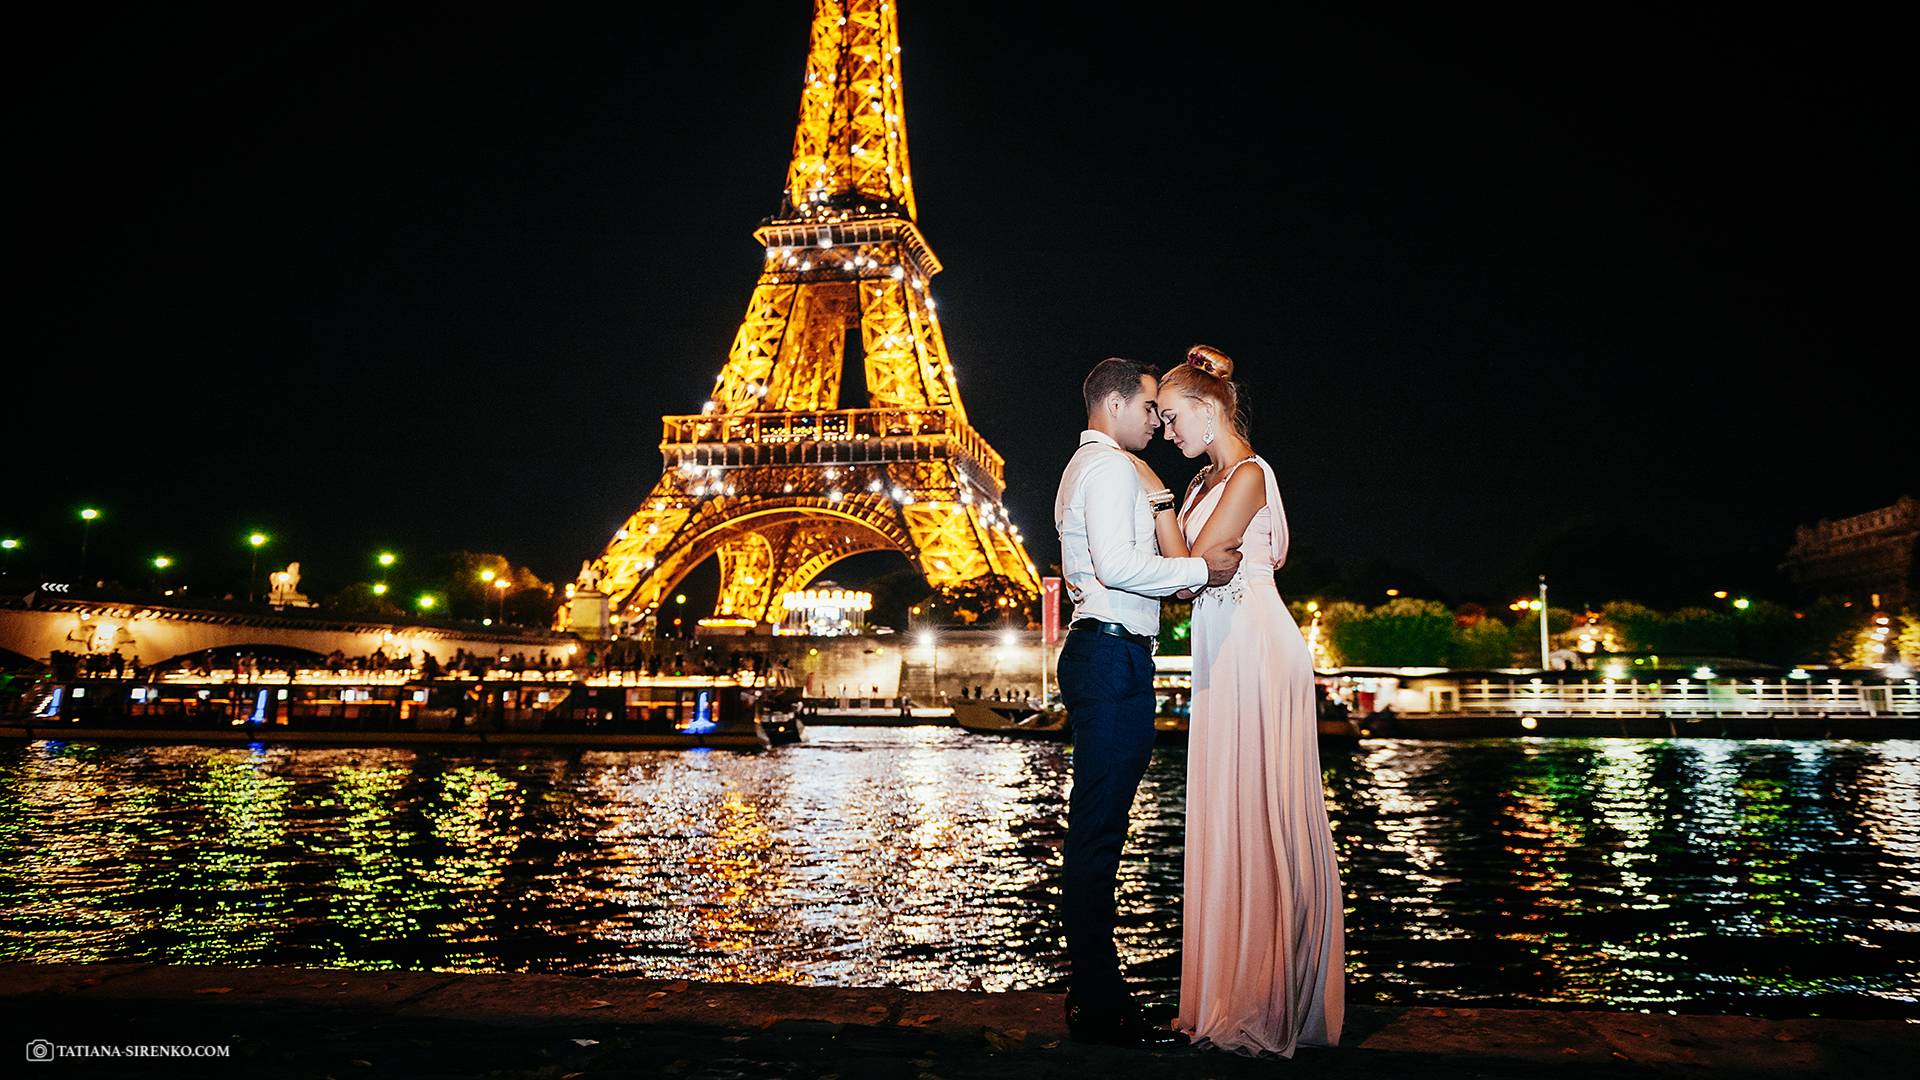 Свадьба в стиле париж: оформление места торжества, наряды молодоженов